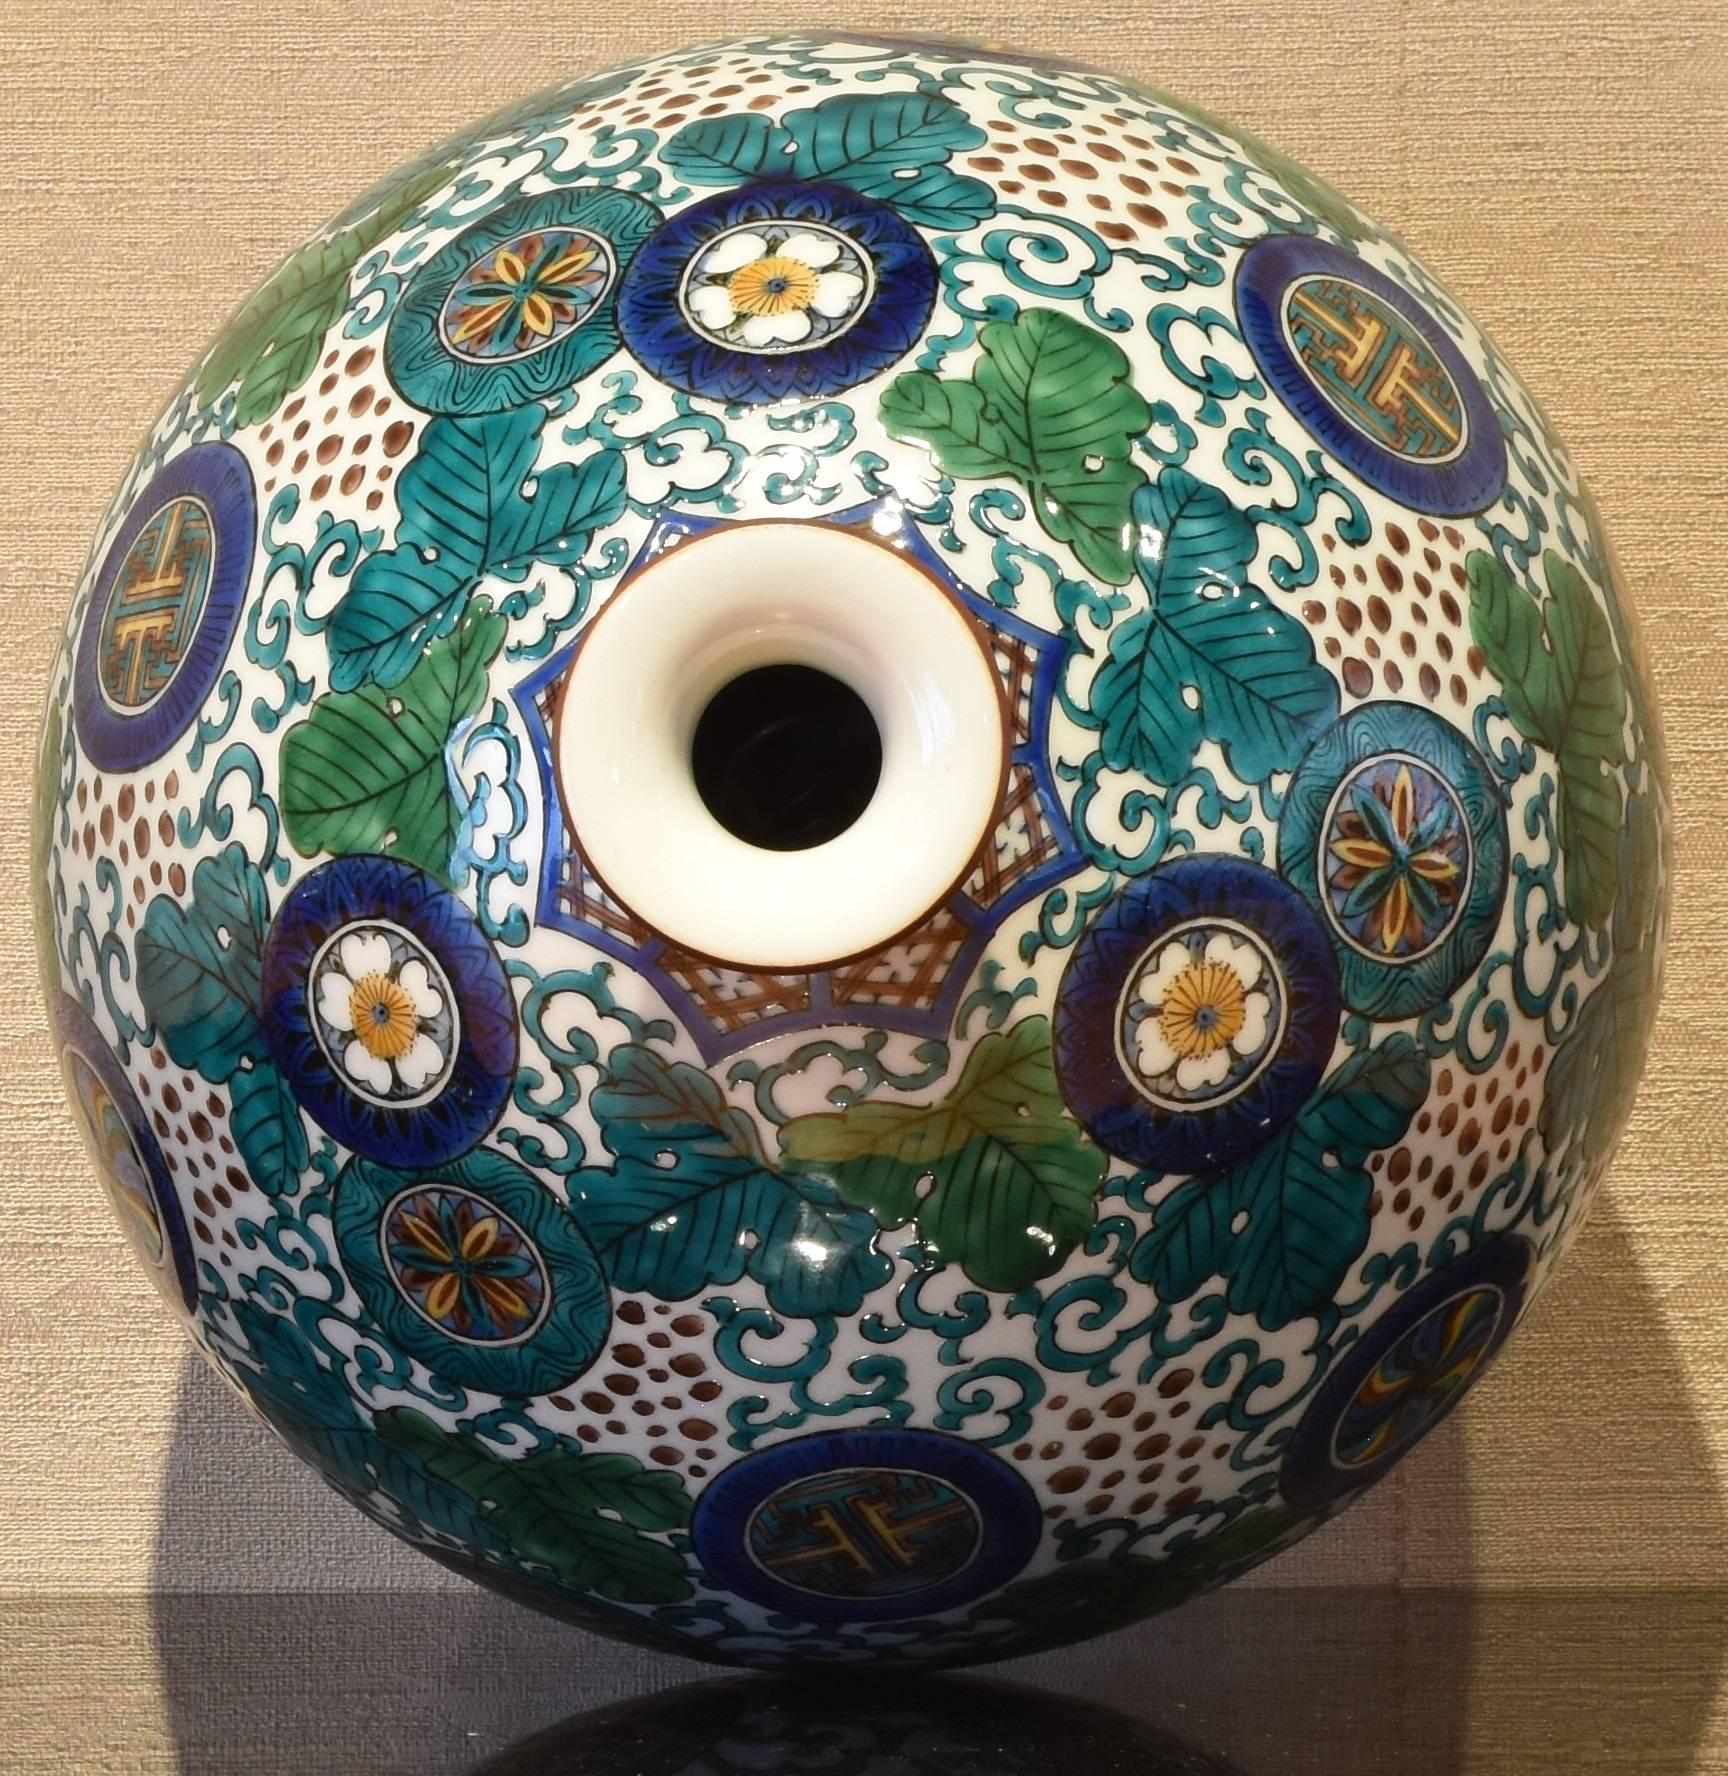 Hand-Painted Japanese Kutani Decorative Porcelain Vase by Master Artist